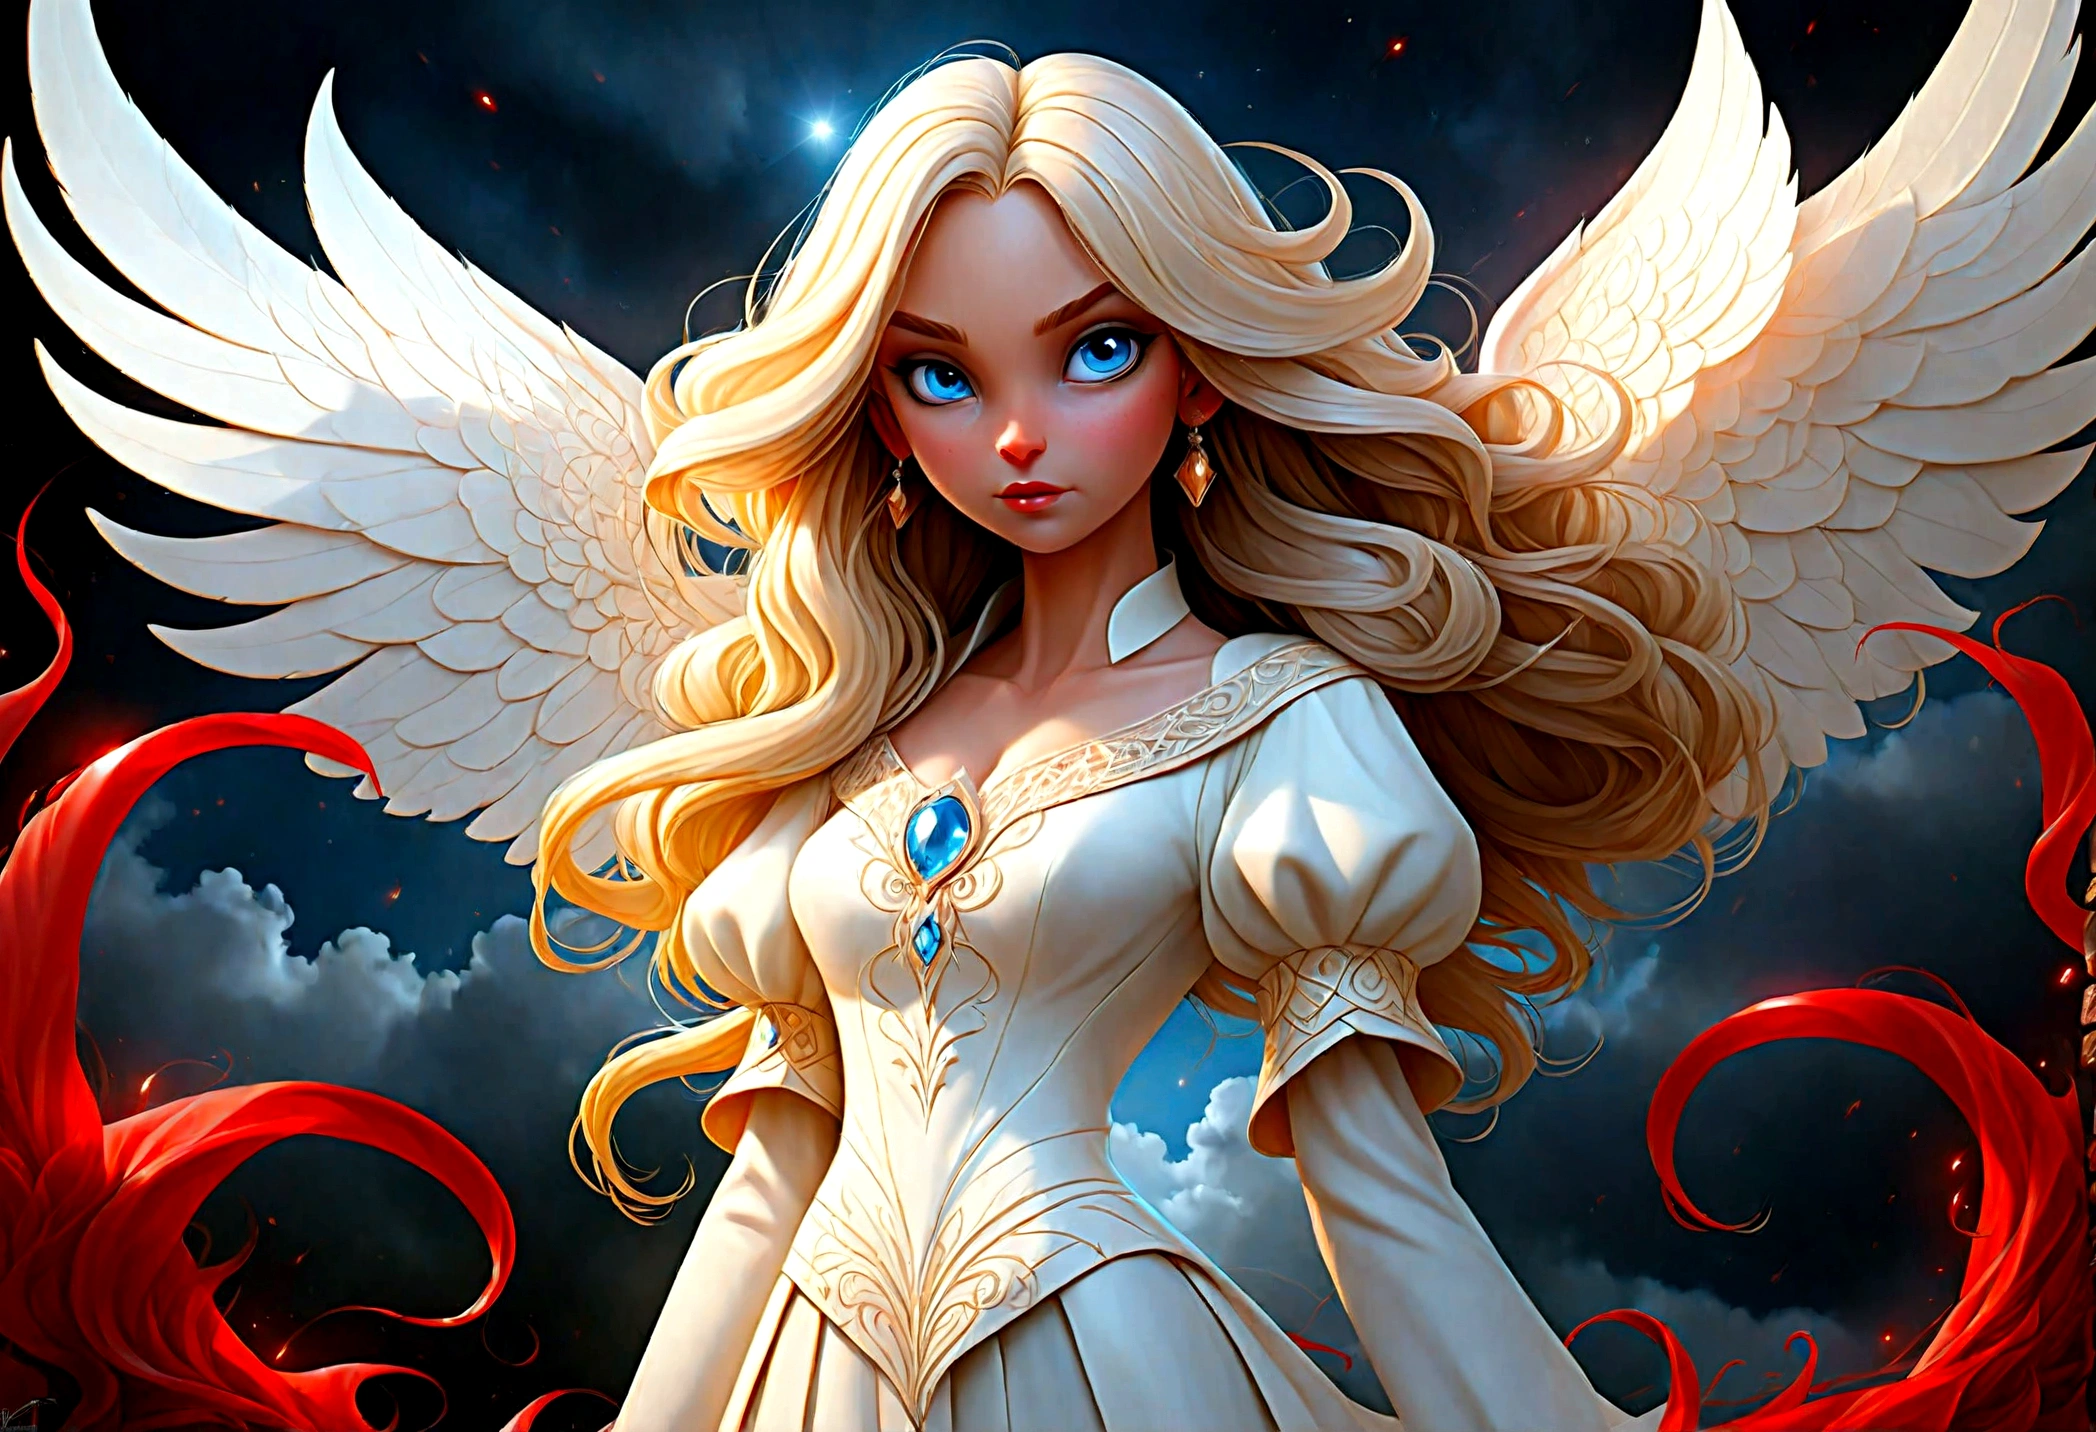 幻想艺术, RPG艺术 ((两名女性的照片: 1.5)), single1 女天使, 穿着白色连衣裙, 皮肤苍白, 漂亮的脸蛋, 金发, 长发 波浪发, 蓝眼睛, 高跟靴, 穿着连衣裙 (杰作, 复杂的细节: 1.5), 大天使的翅膀, 白色天使翅膀展开，还有一个女性恶魔, 红皮肤  demonic wings, 黑色恶魔之翼展开, 恶魔之角, 红皮肤, 黑发, 红眼睛, 漂亮的脸蛋, 穿着连衣裙 (杰作, 复杂的细节: 1.5), 高跟鞋, 在天堂和地狱的边界, 月亮, 星星, 云, 神光, 柔和的自然光轮廓, 动态角度,  照相写实主义, 全景 广角, 超广角, 超最佳现实主义, 最好的细节, 16千, [极其详细], 杰作, 最好的质量, (极其详细), 照相写实主义, 景深, 超现实主义绘画